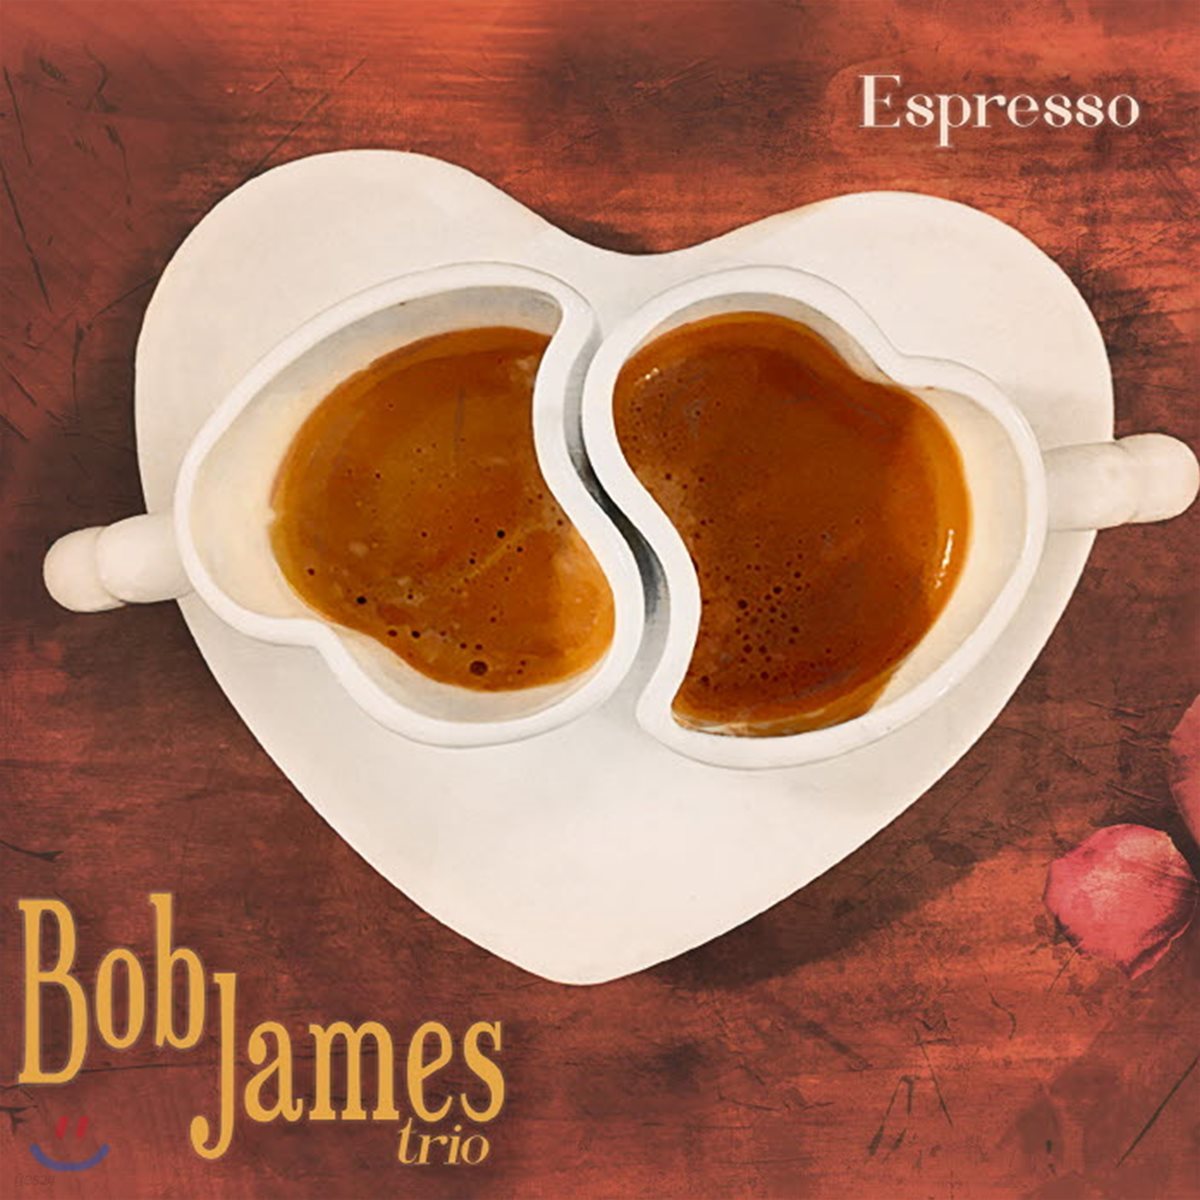 Bob James Trio (밥 제임스 트리오) - Espresso [MQA-CD]